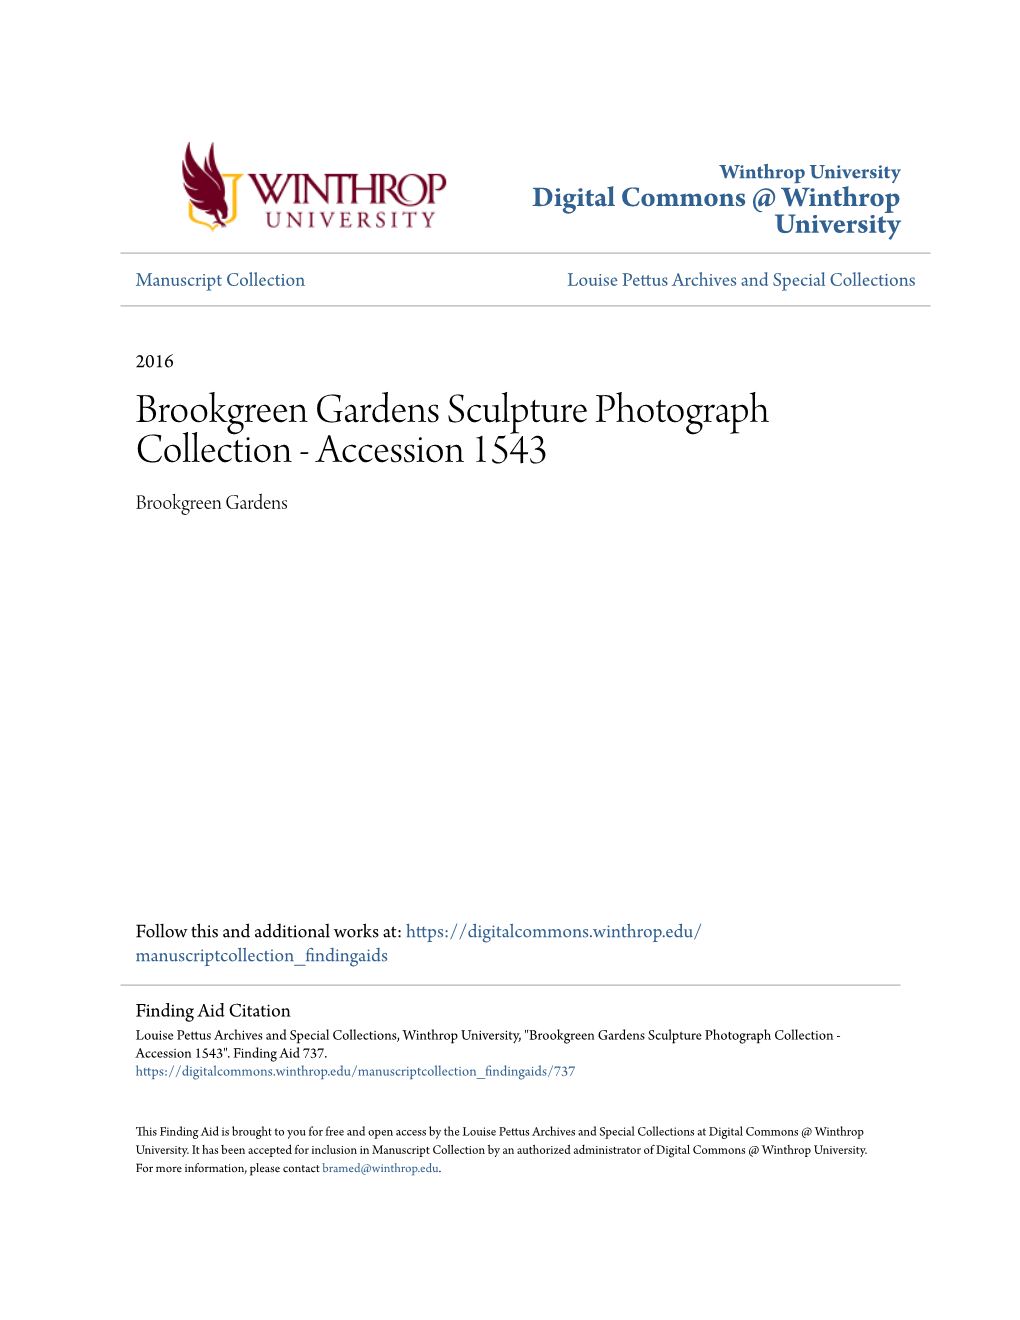 Brookgreen Gardens Sculpture Photograph Collection - Accession 1543 Brookgreen Gardens